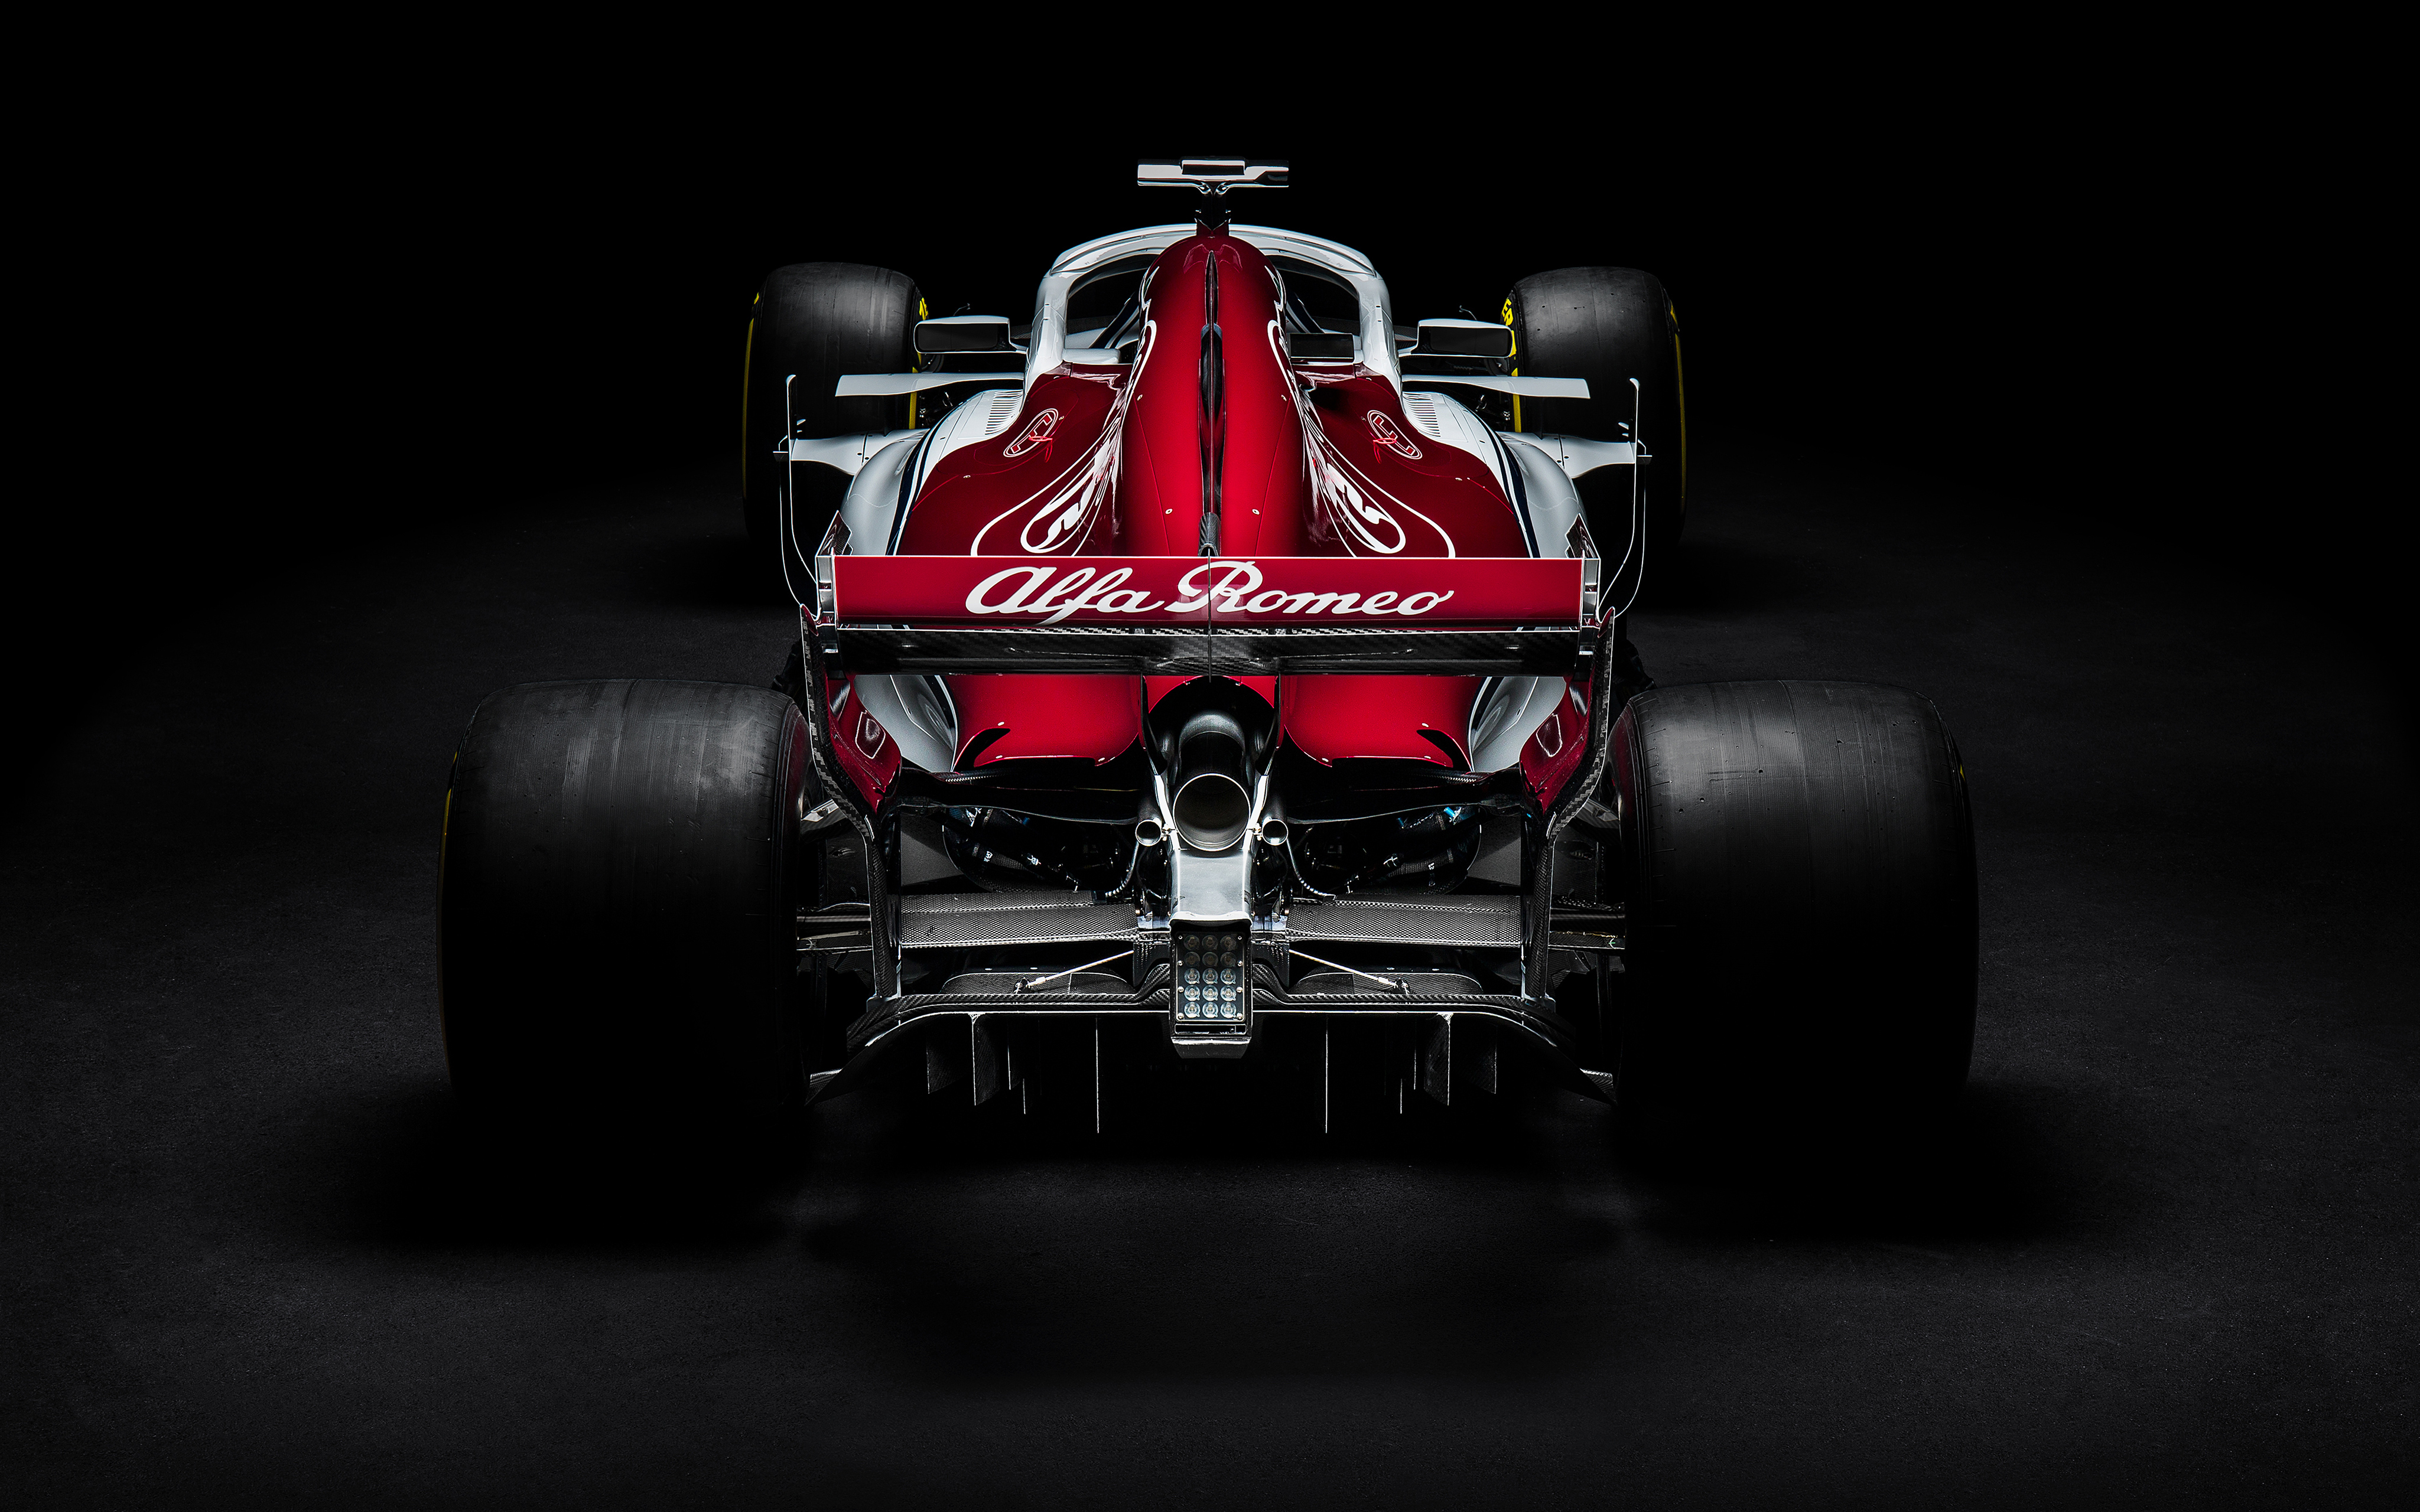 2018 Sauber C37 Formula One Racing car 4K